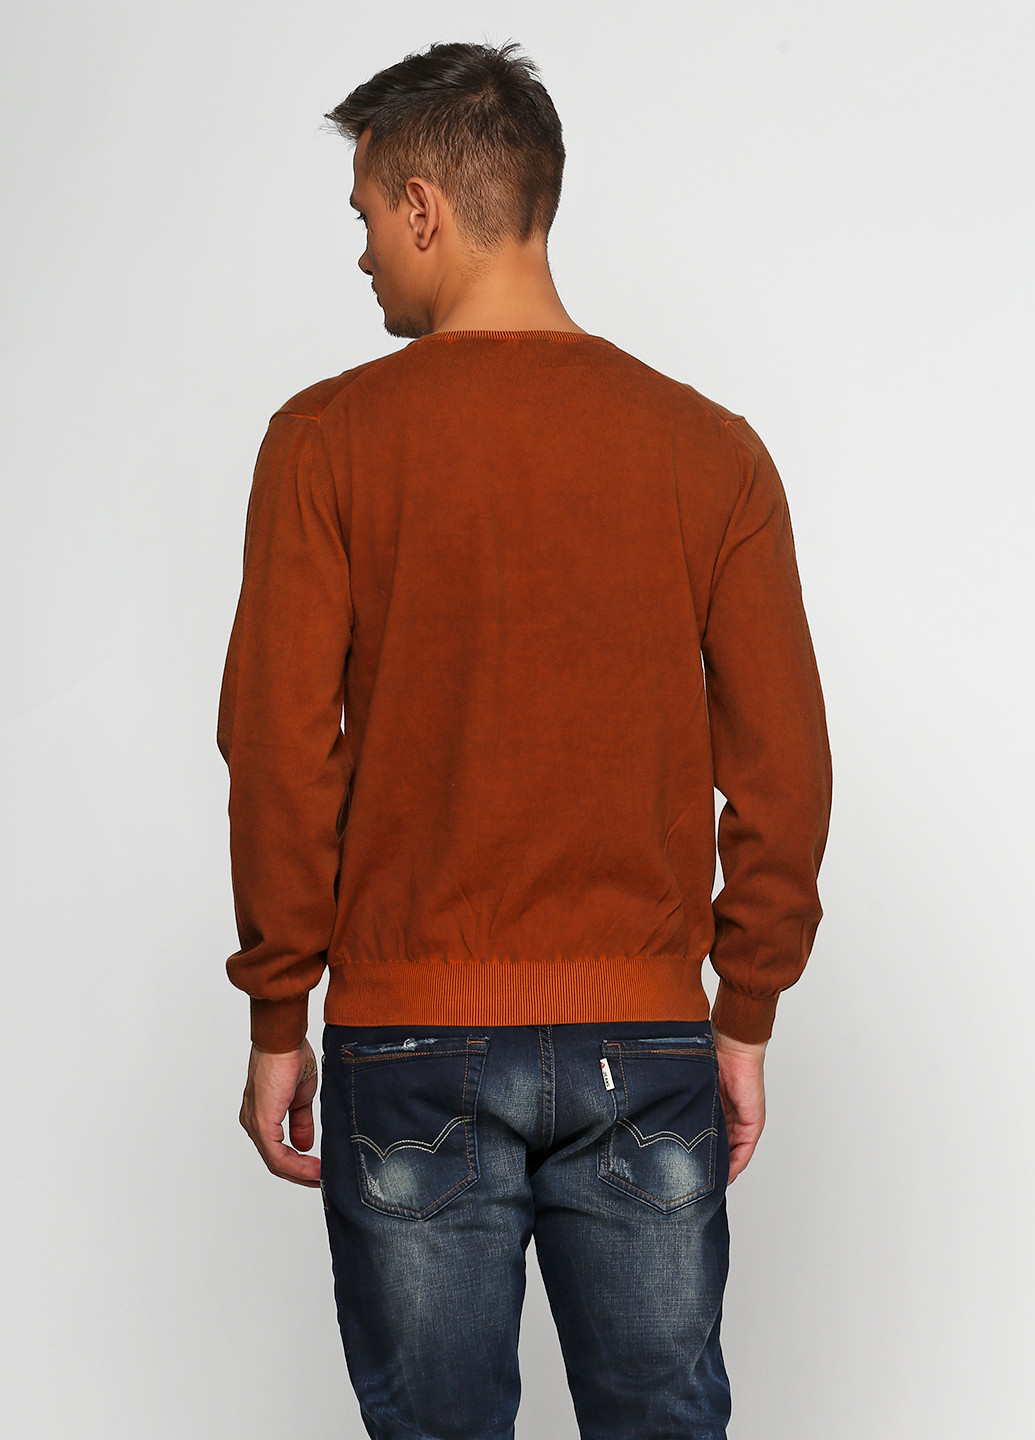 Коричневый демисезонный пуловер пуловер Barbieri